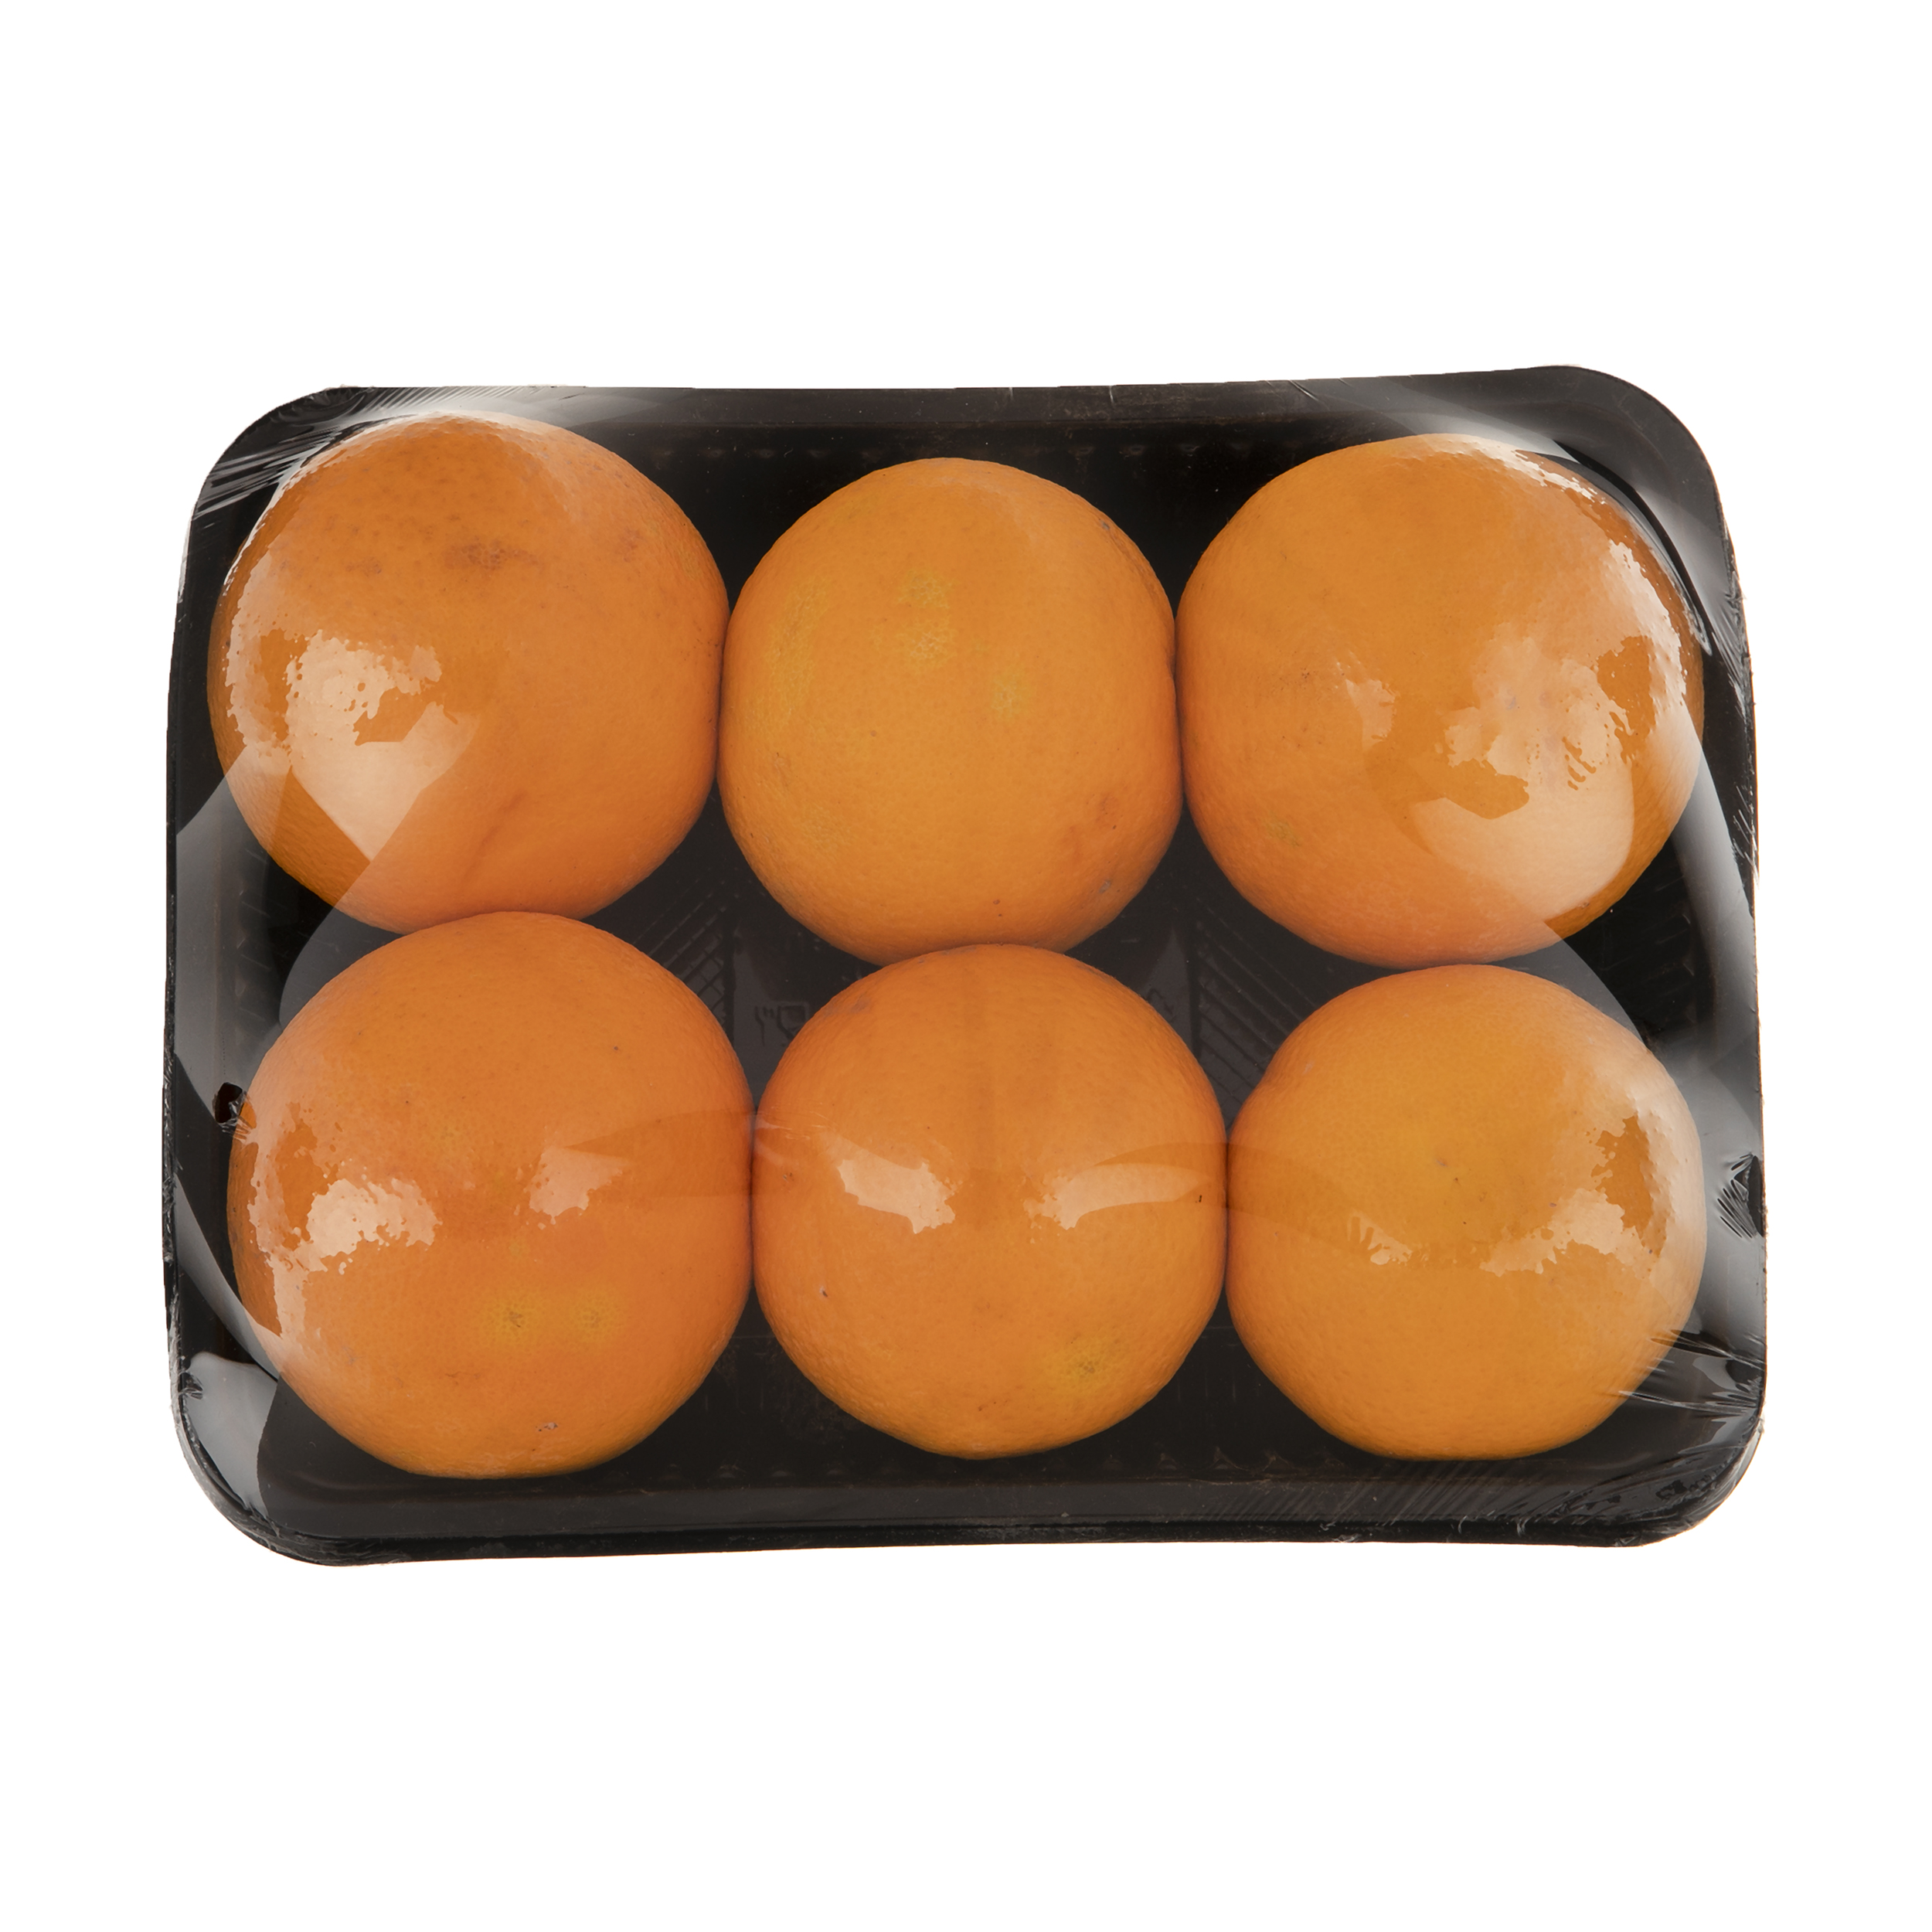 پرتقال جنوب - 1 کیلوگرم